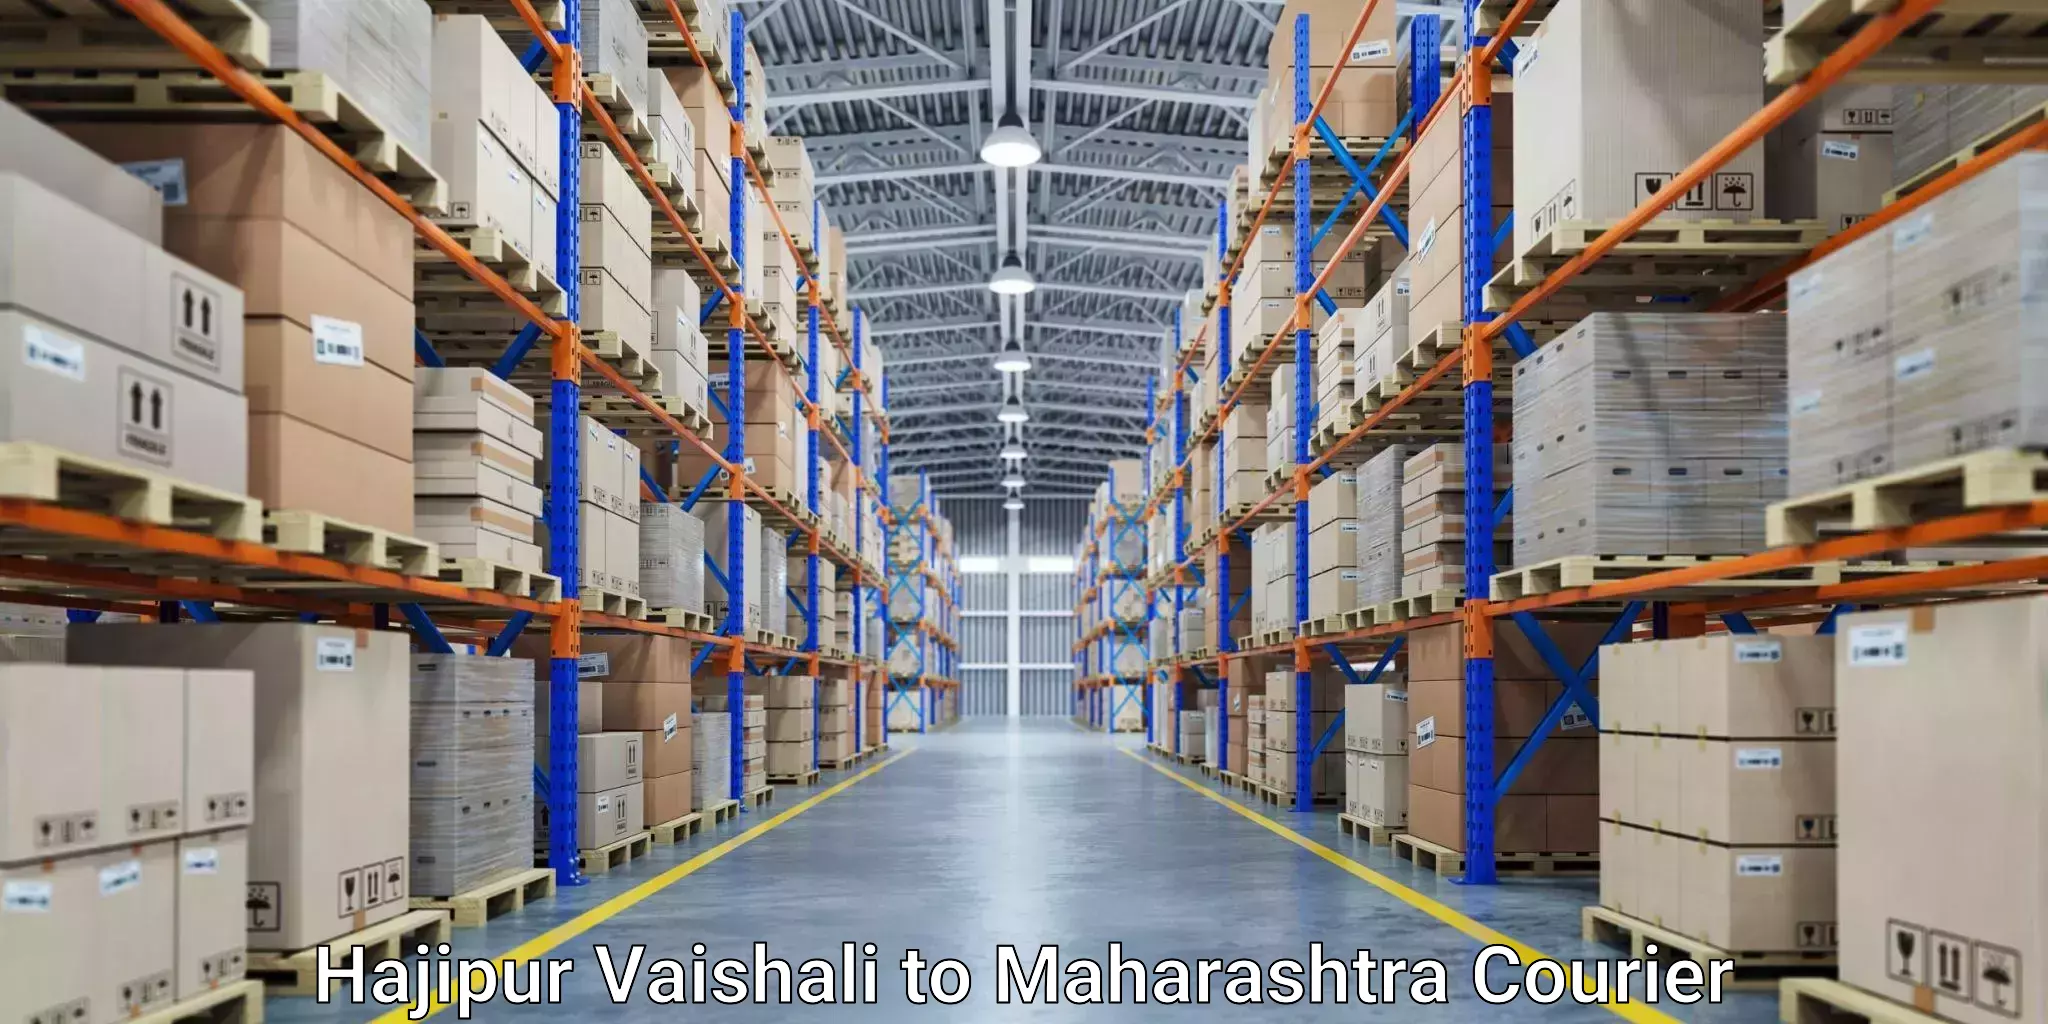 Courier service booking Hajipur Vaishali to Maharashtra